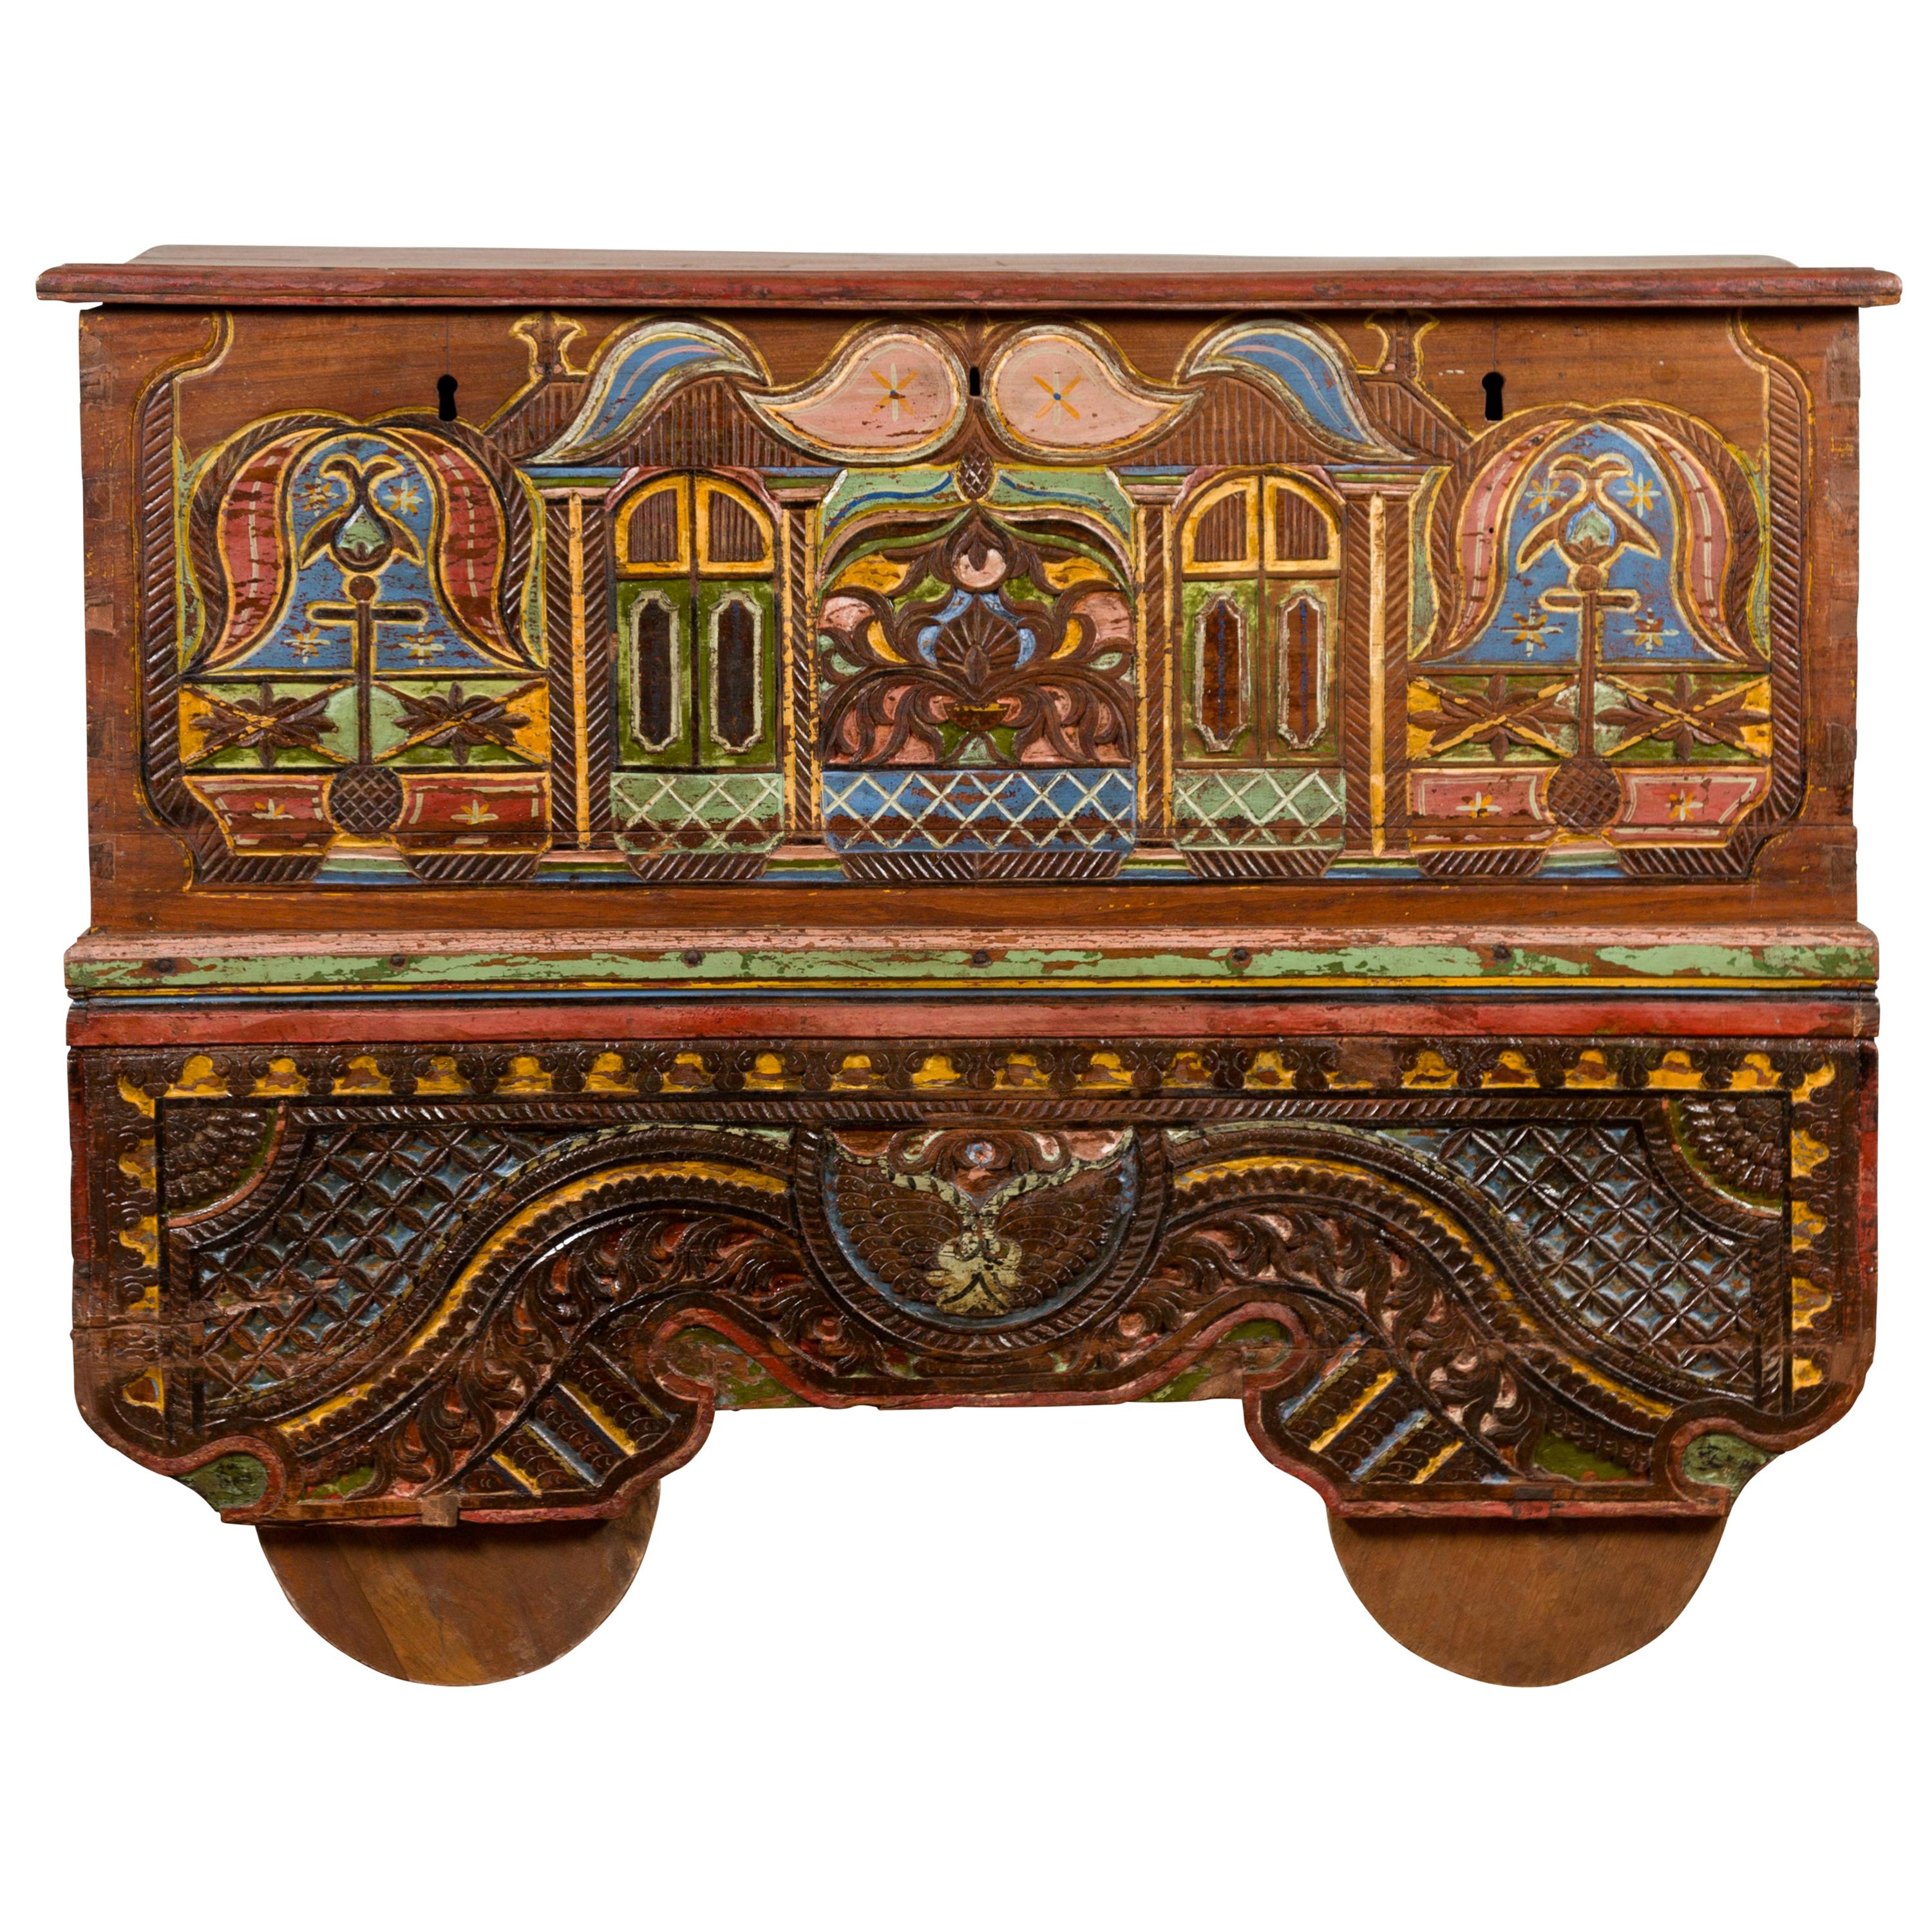 Indonesische Madurese Polychrome Handelsdeckentruhe auf Rädern aus dem 19. Jahrhundert